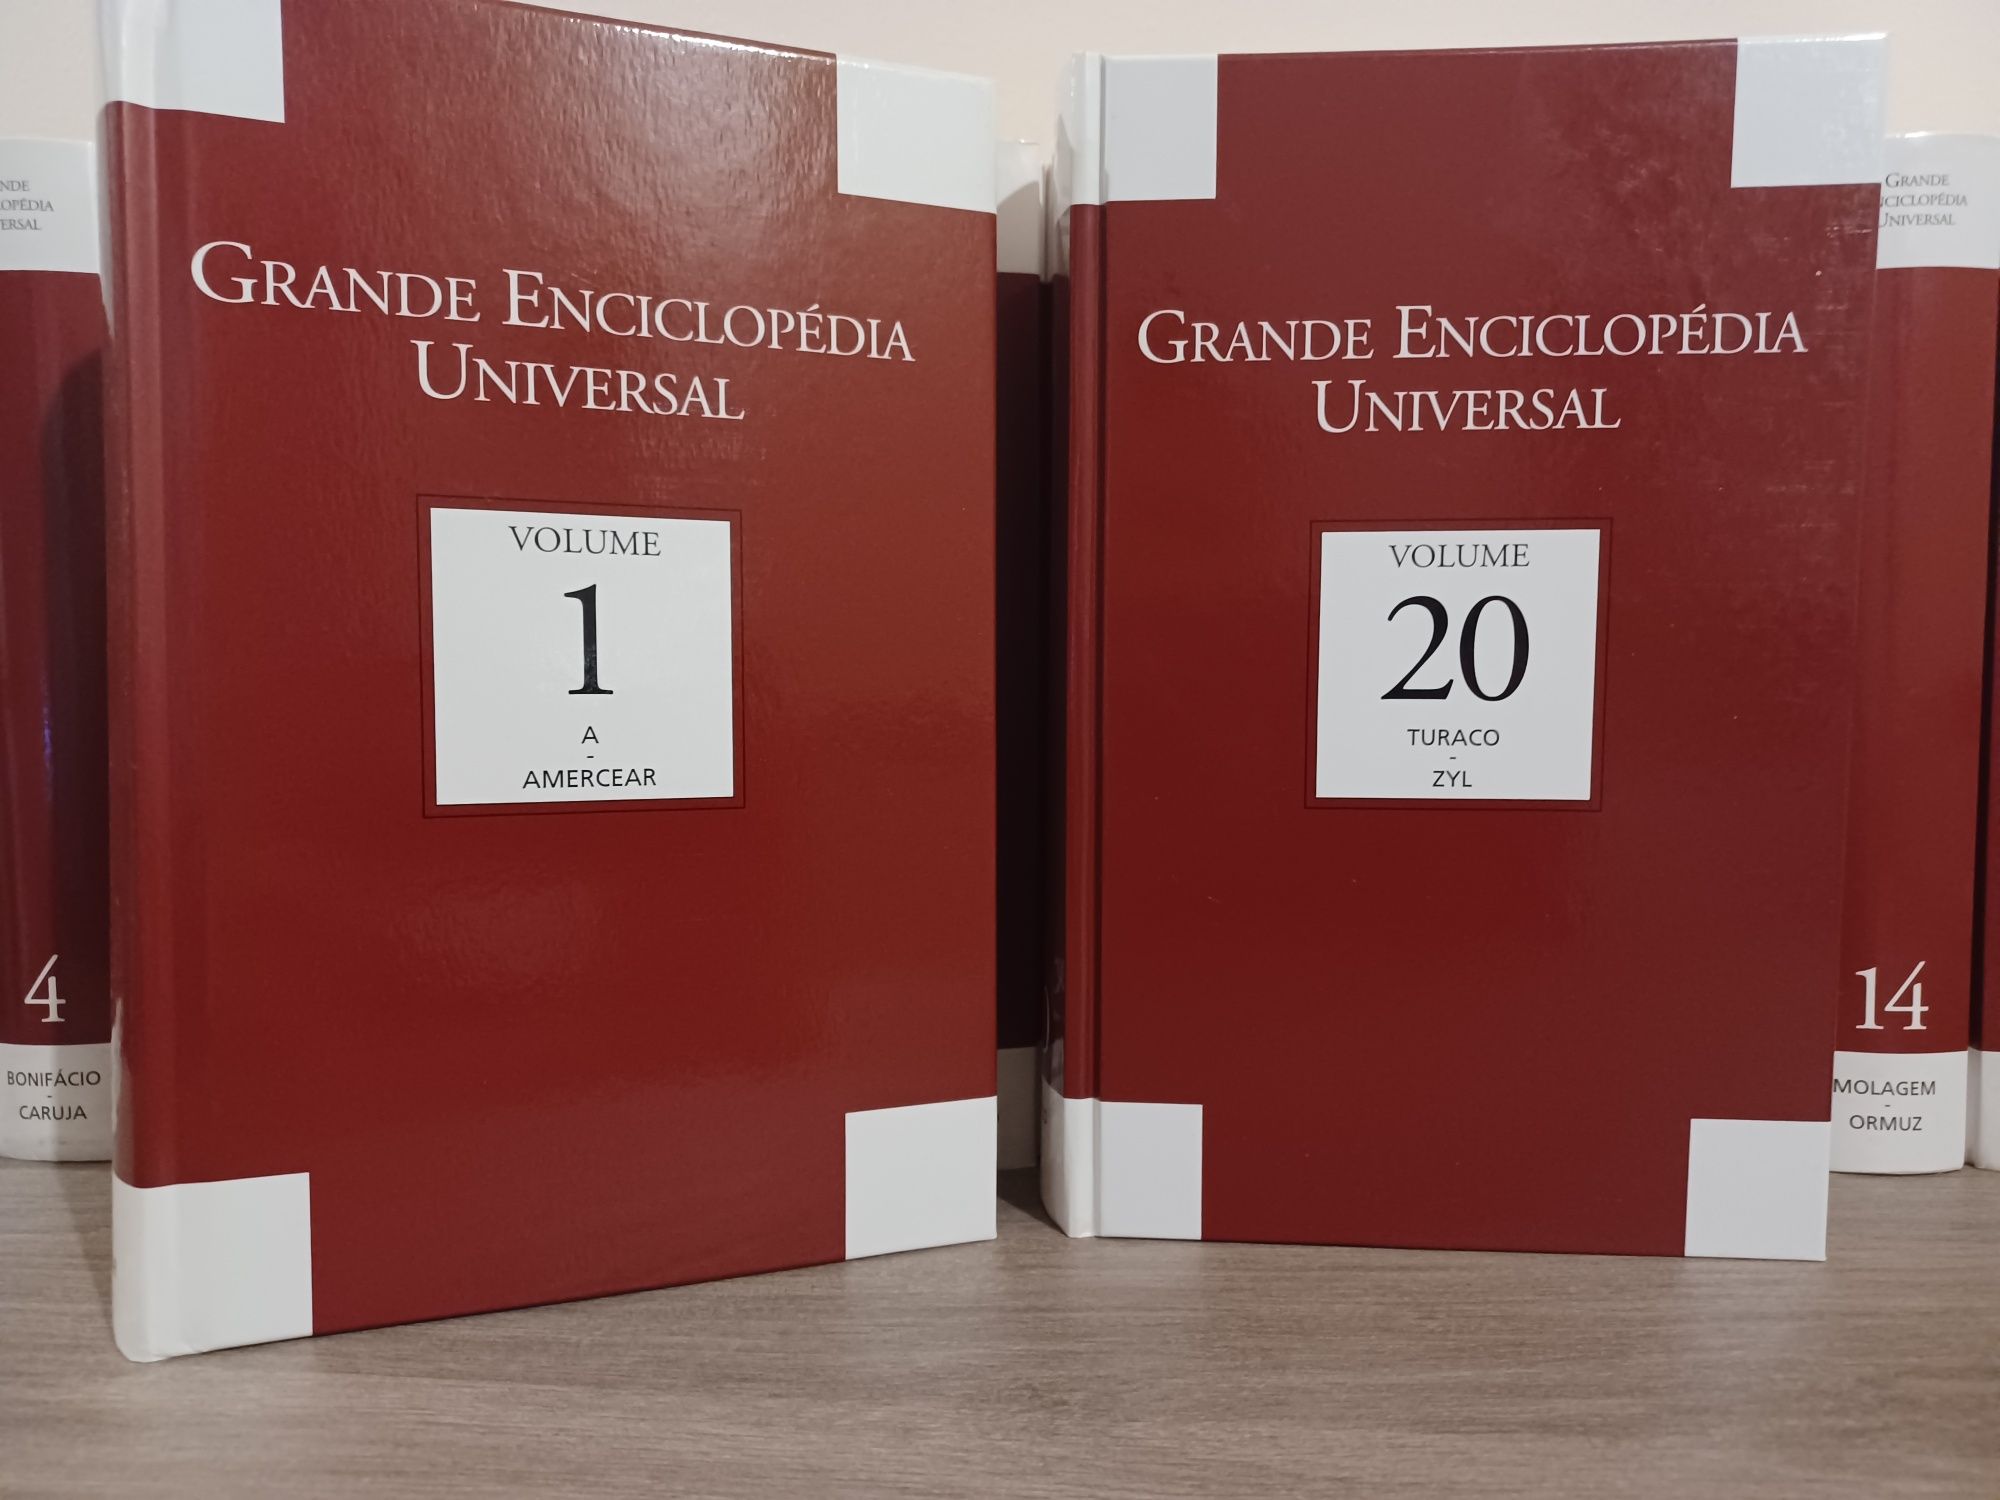 Enciclopédia “Grande Enciclopédia Universal